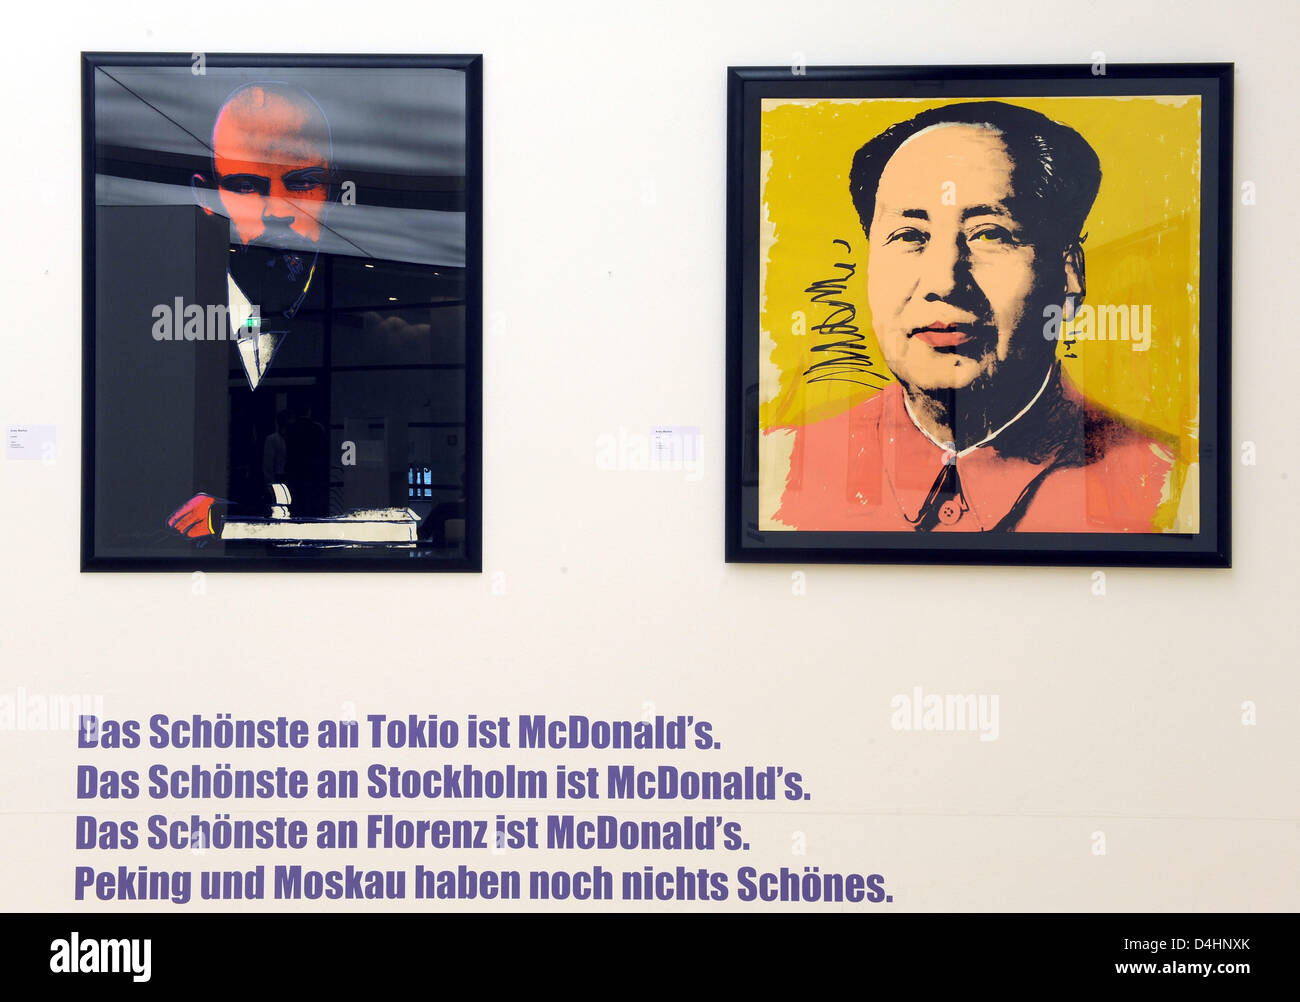 Porträts der beiden Lenin Und Mao von Andy Warhol sind im Rahmen der Ausstellung abgebildet? Andy Warhol - von Marilyn zu Mao? in Oldenburg, Deutschland, 5. Februar 2009. Horst-Janssen-Museum zeigt die Ausstellung mit fünf und vierzig Serigraphien von legendären uns Pop-Art-Künstler Warhol von 07 Februar bis 3. Mai 2009. Foto: INGO WAGNER Stockfoto